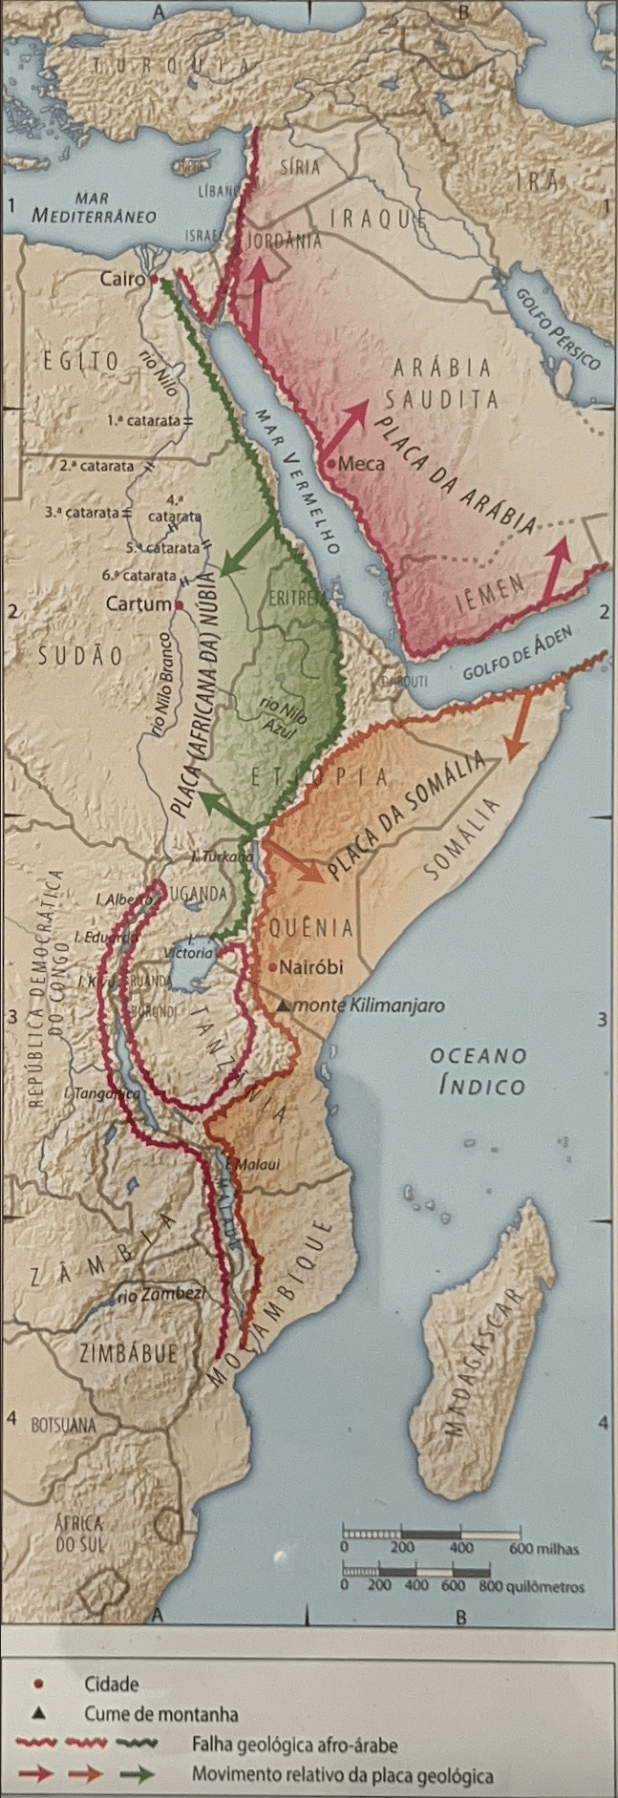 A falha Geológica afro-árabe